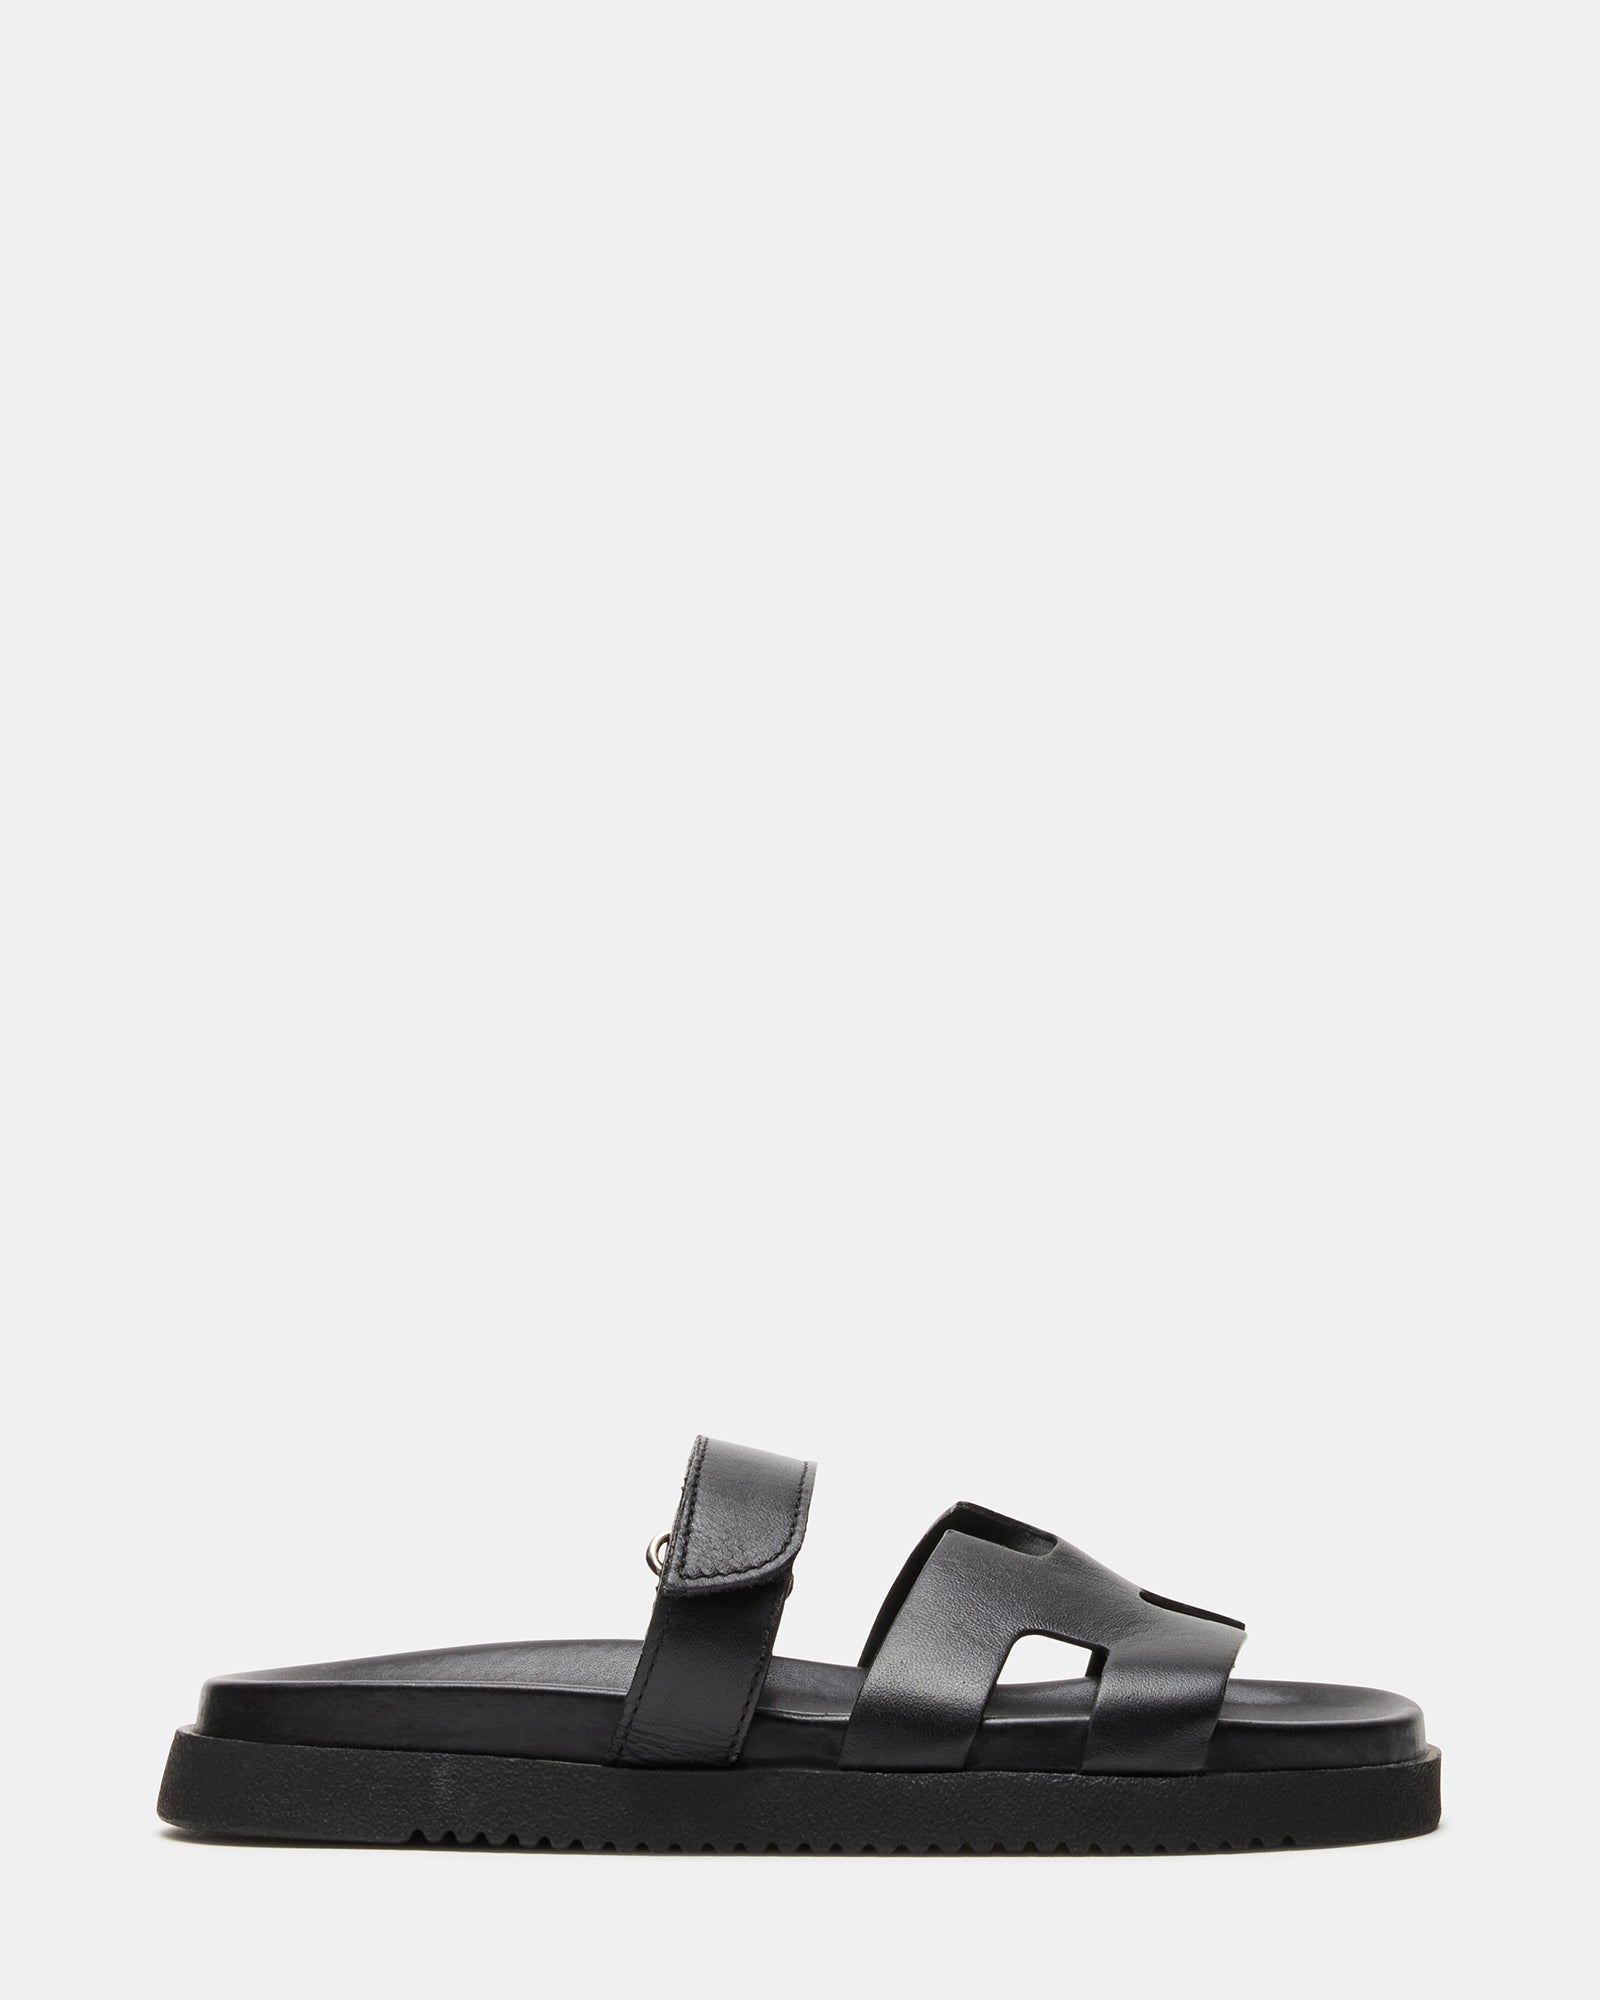 Steve Madden Shoes Mens 9.5 M Black & silver Mezmoryz Stud Smoking Slipper  | eBay